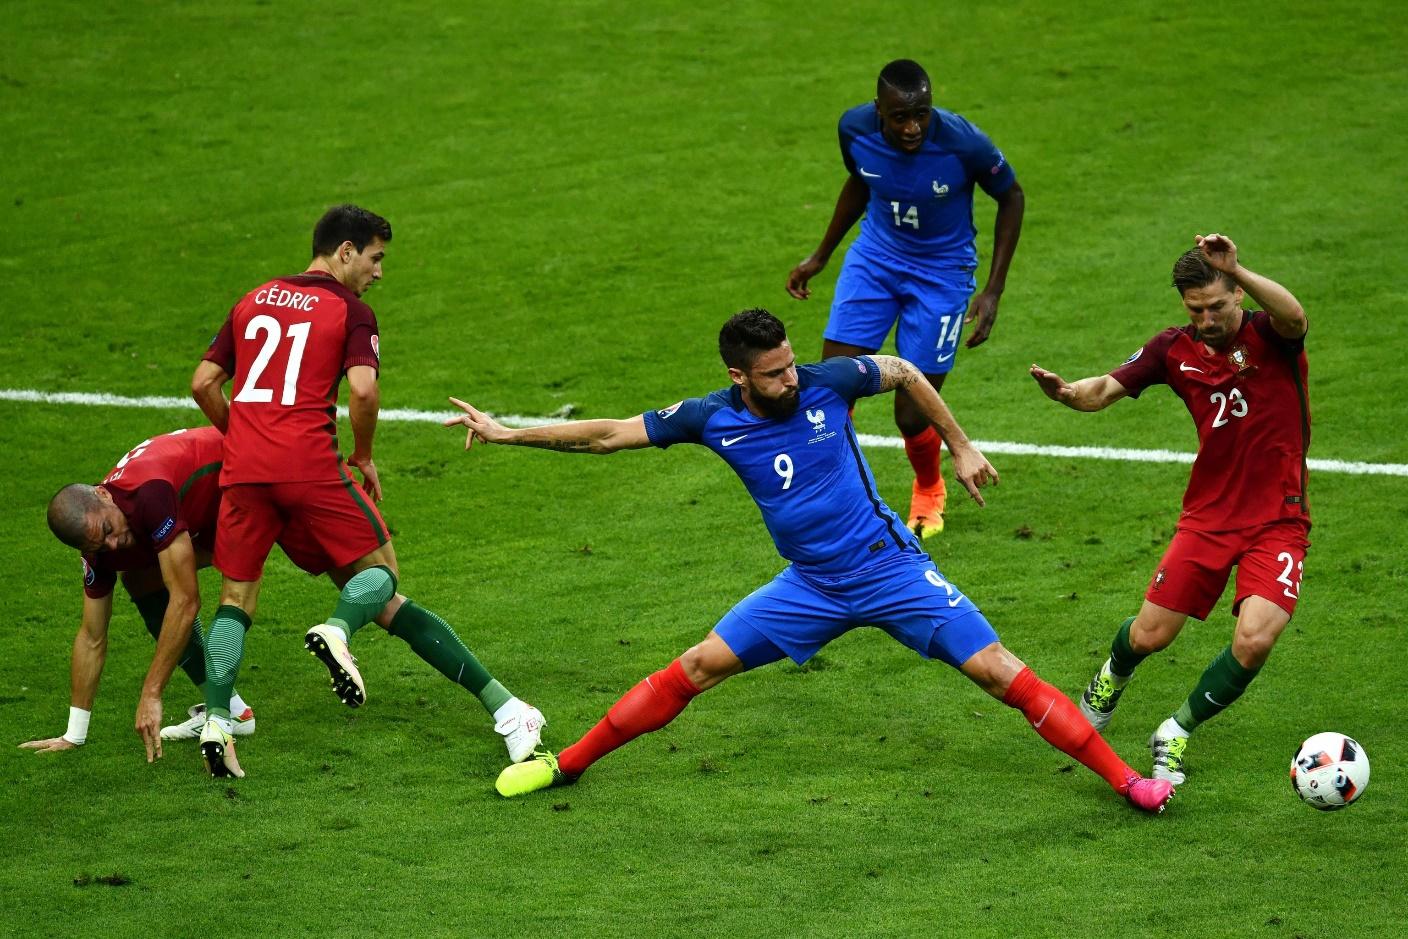 Pháp sẽ có cơ hội trả món nợ sau khi thua Bồ Đào Nha ở chung kết Euro 2016